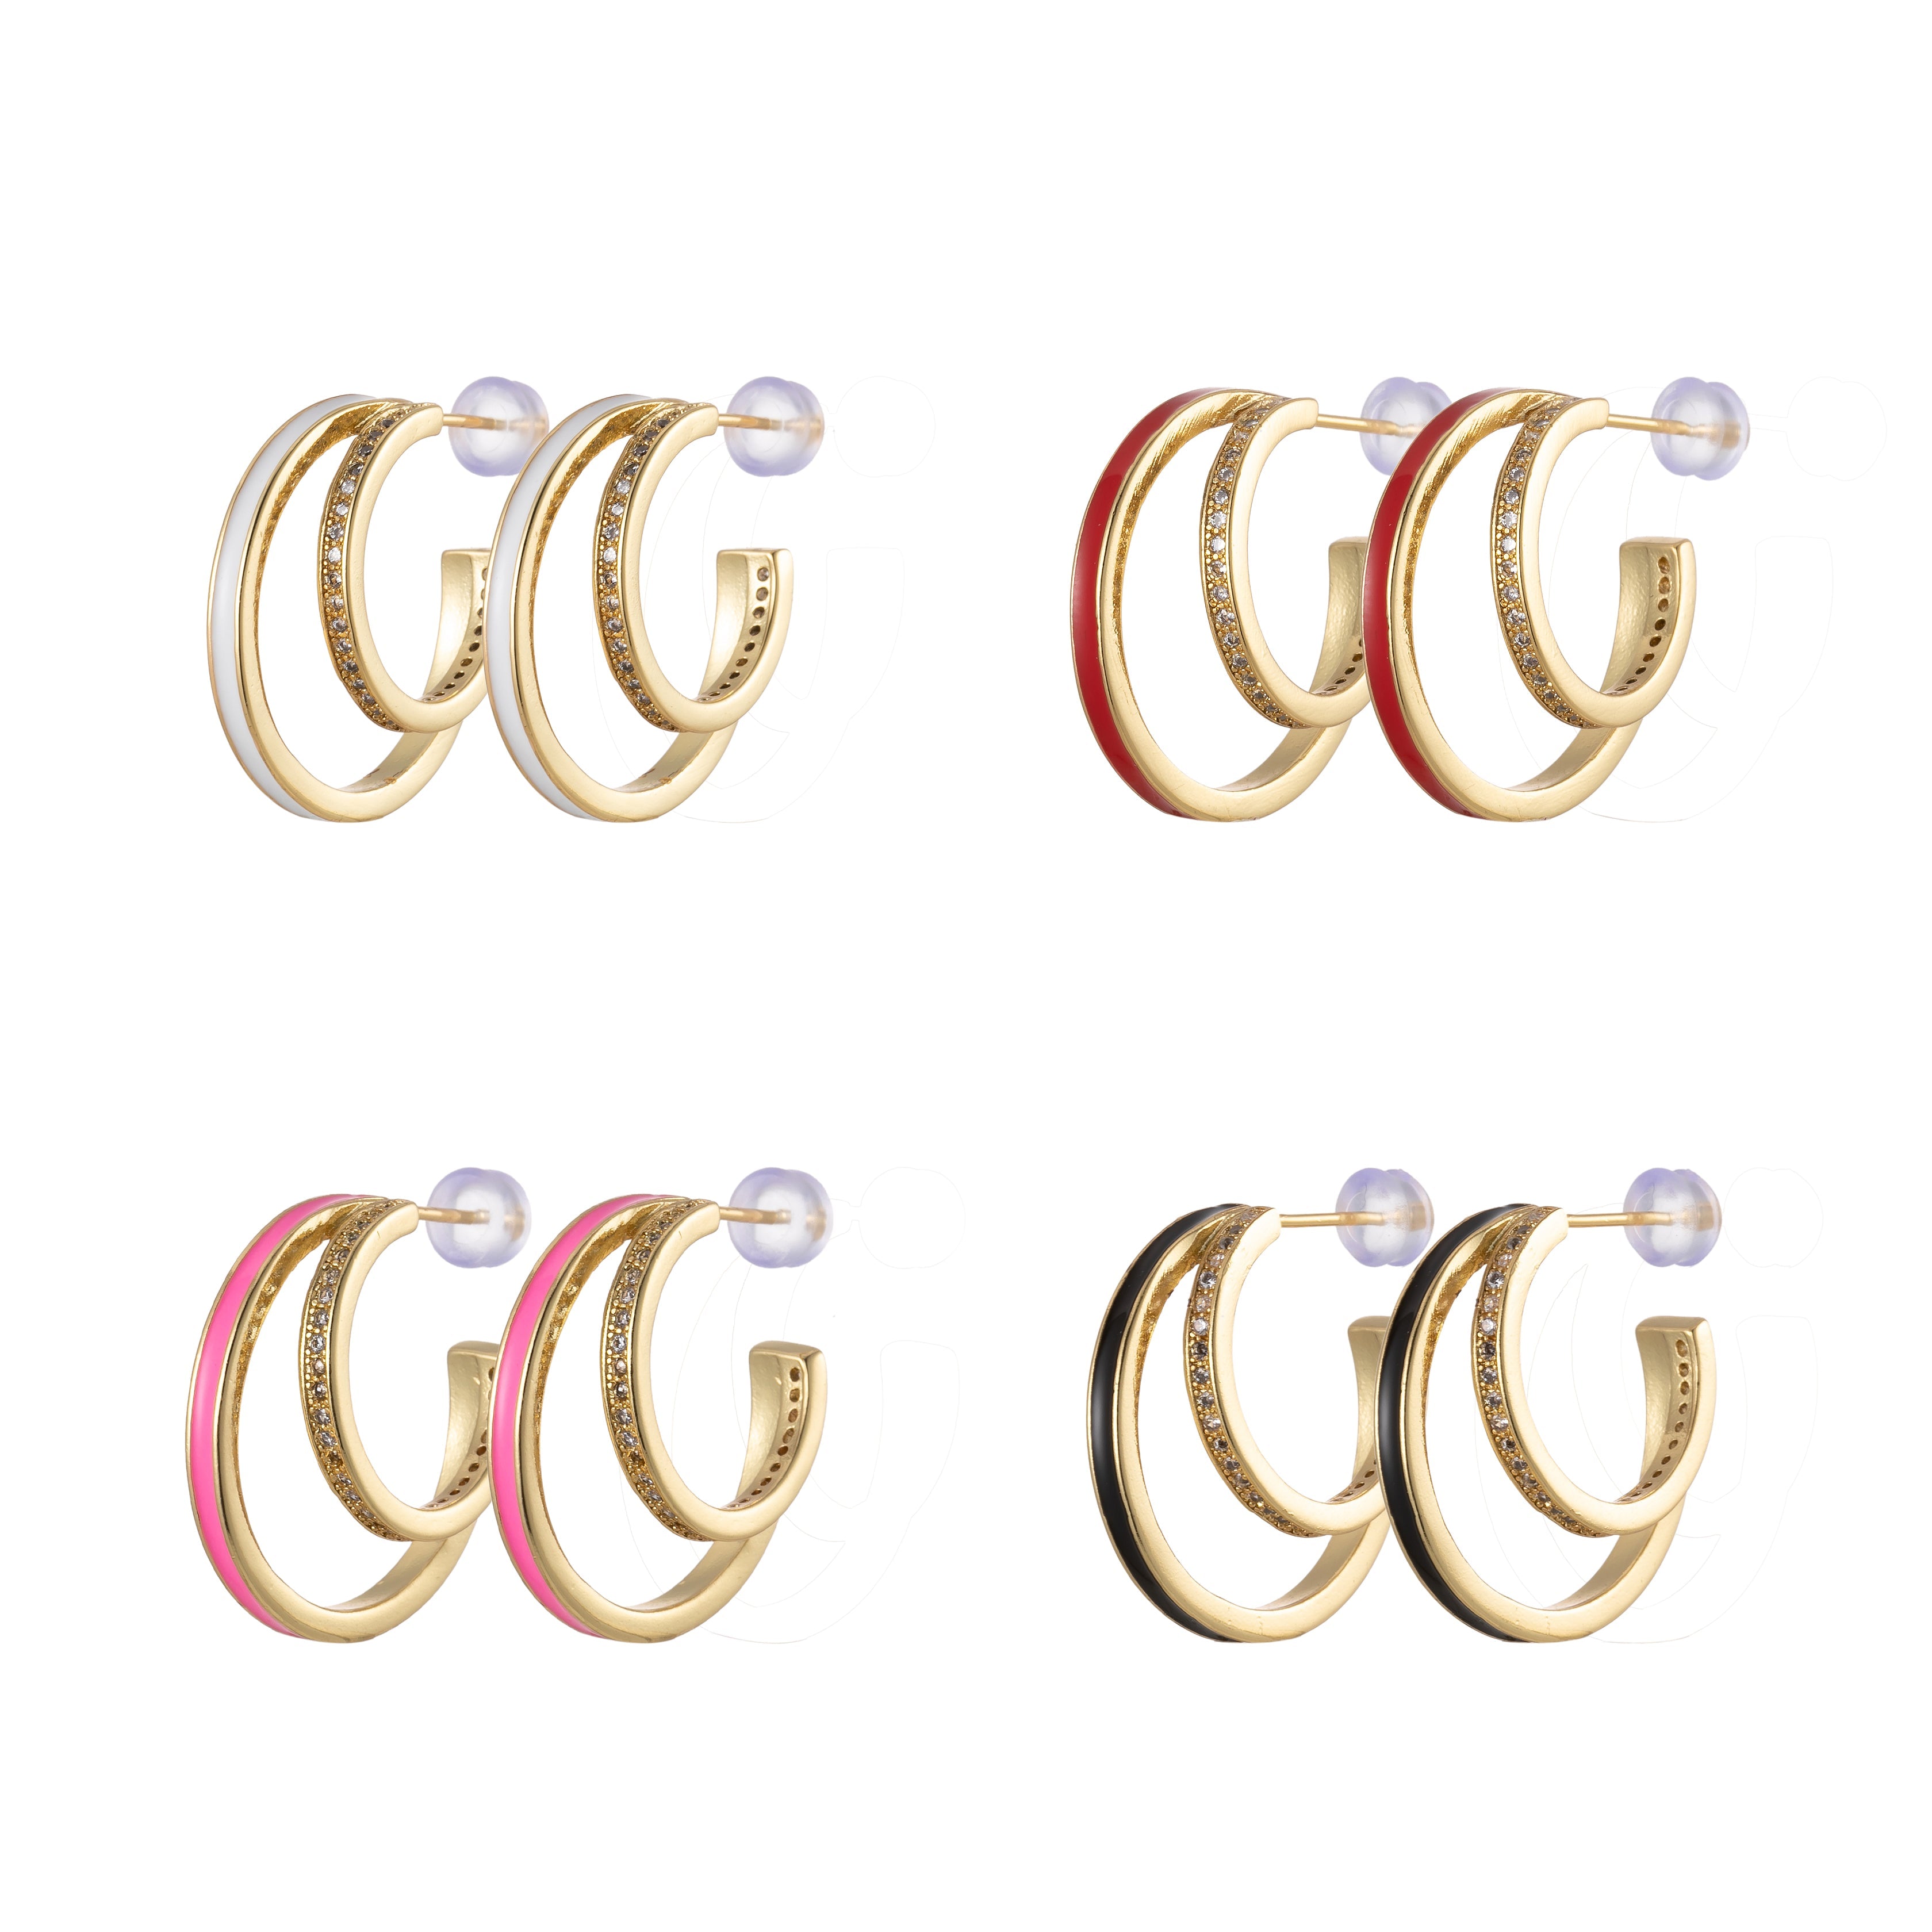 1 pair Enamel Hoops Gold, 14K Gold Filled Hoops, Large Gold Hoop Earrings, Small Hoops Black Pink Red White Earrings, Chunky Light Hoops - DLUXCA